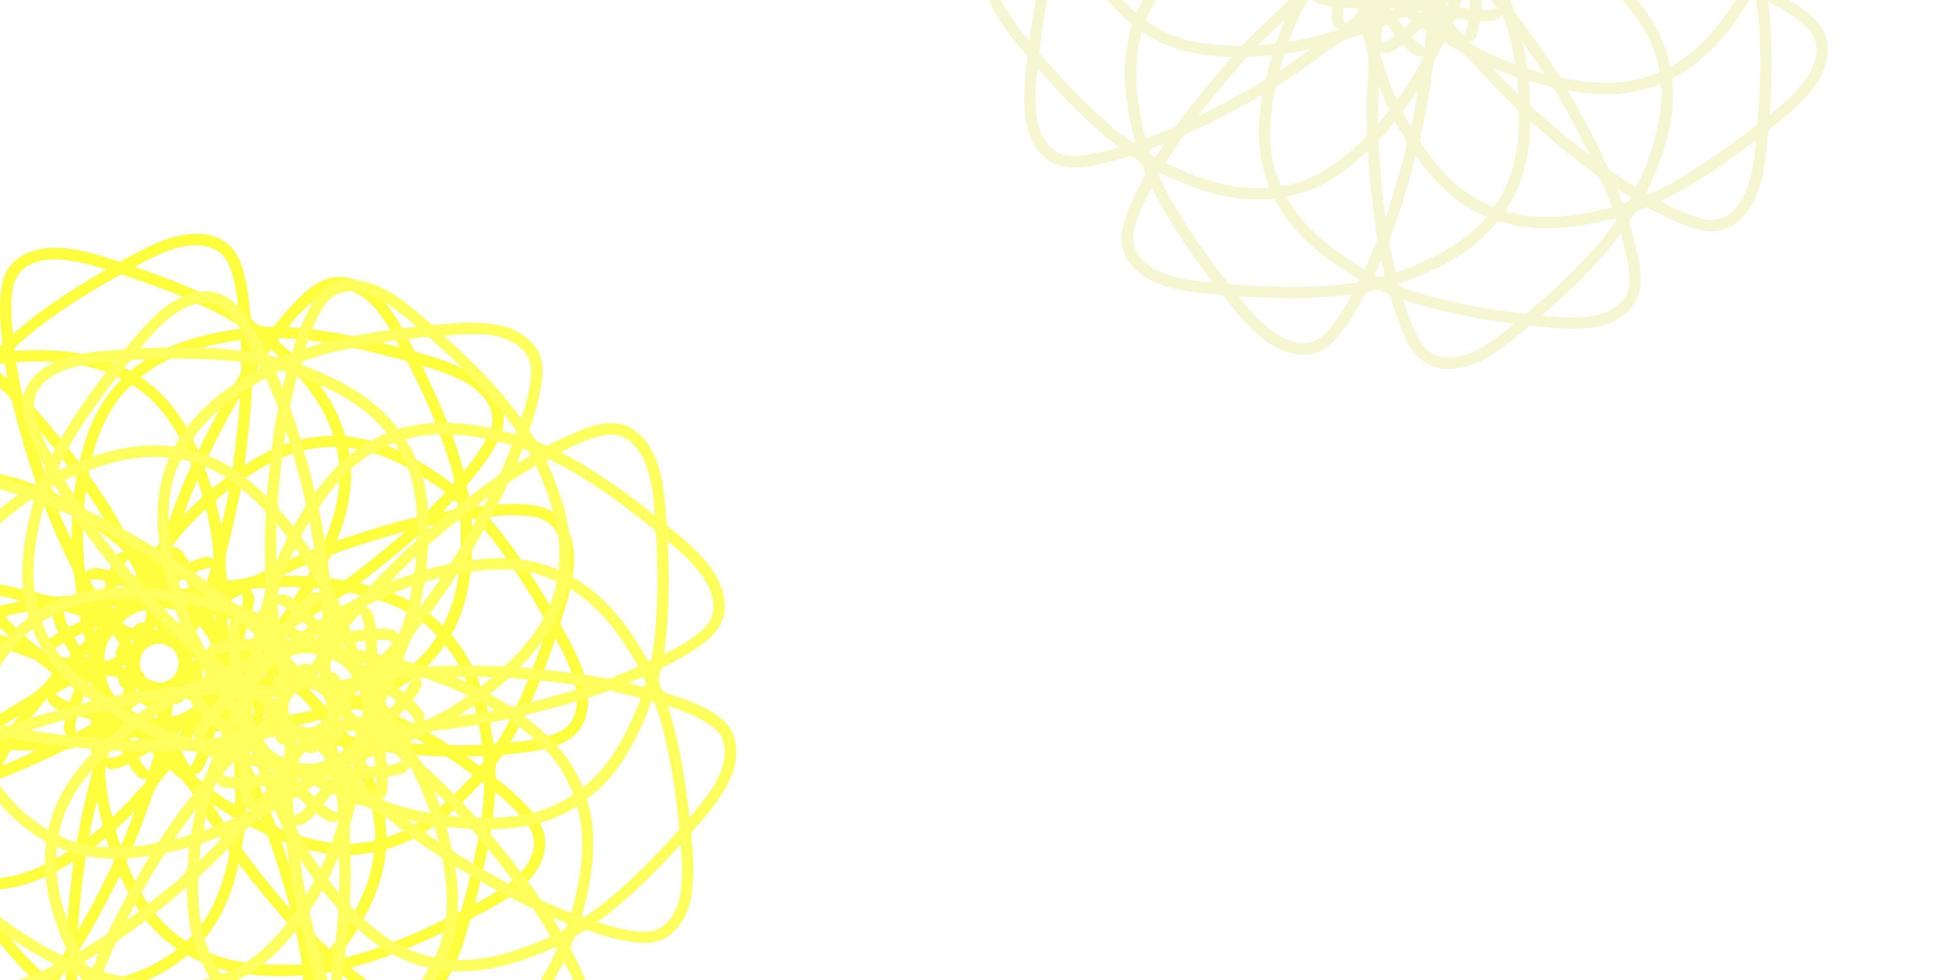 modelo de doodle de vetor amarelo claro com flores.